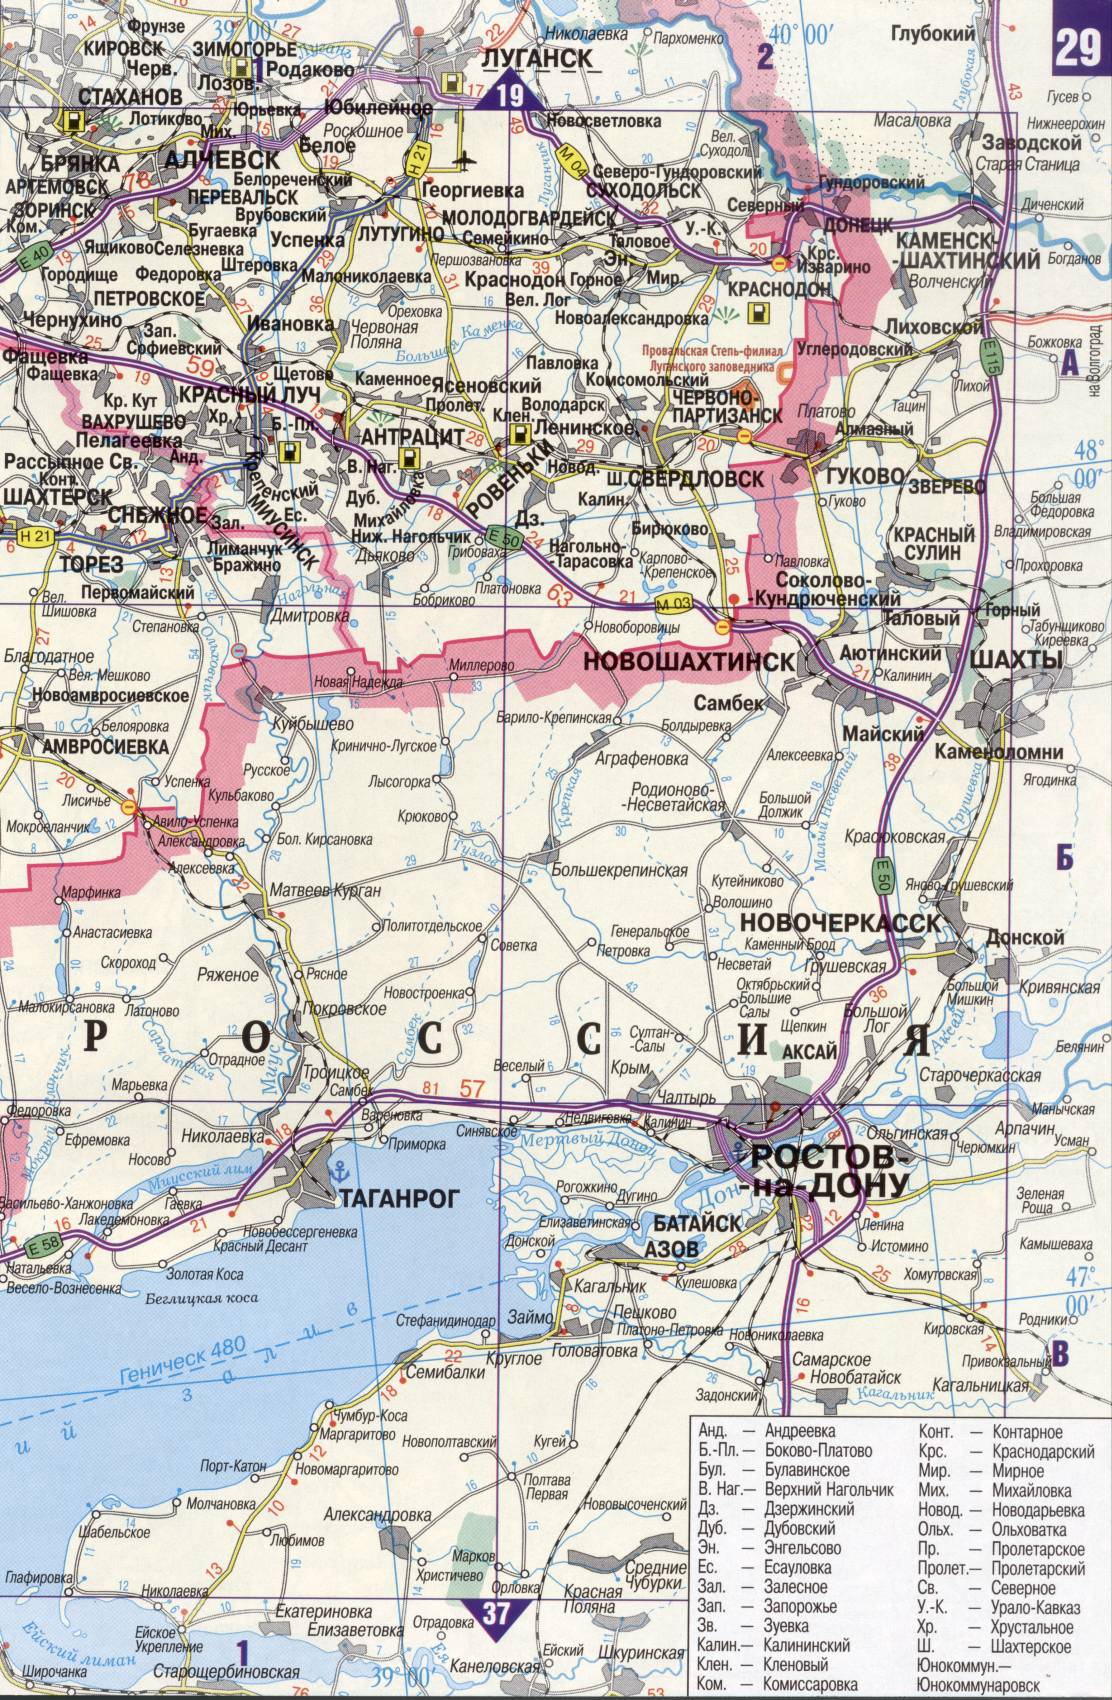 Karte der Ukraine. Detaillierte Straßenkarte der Ukraine avtomobilnog Satin. kostenlos herunterladen, J2